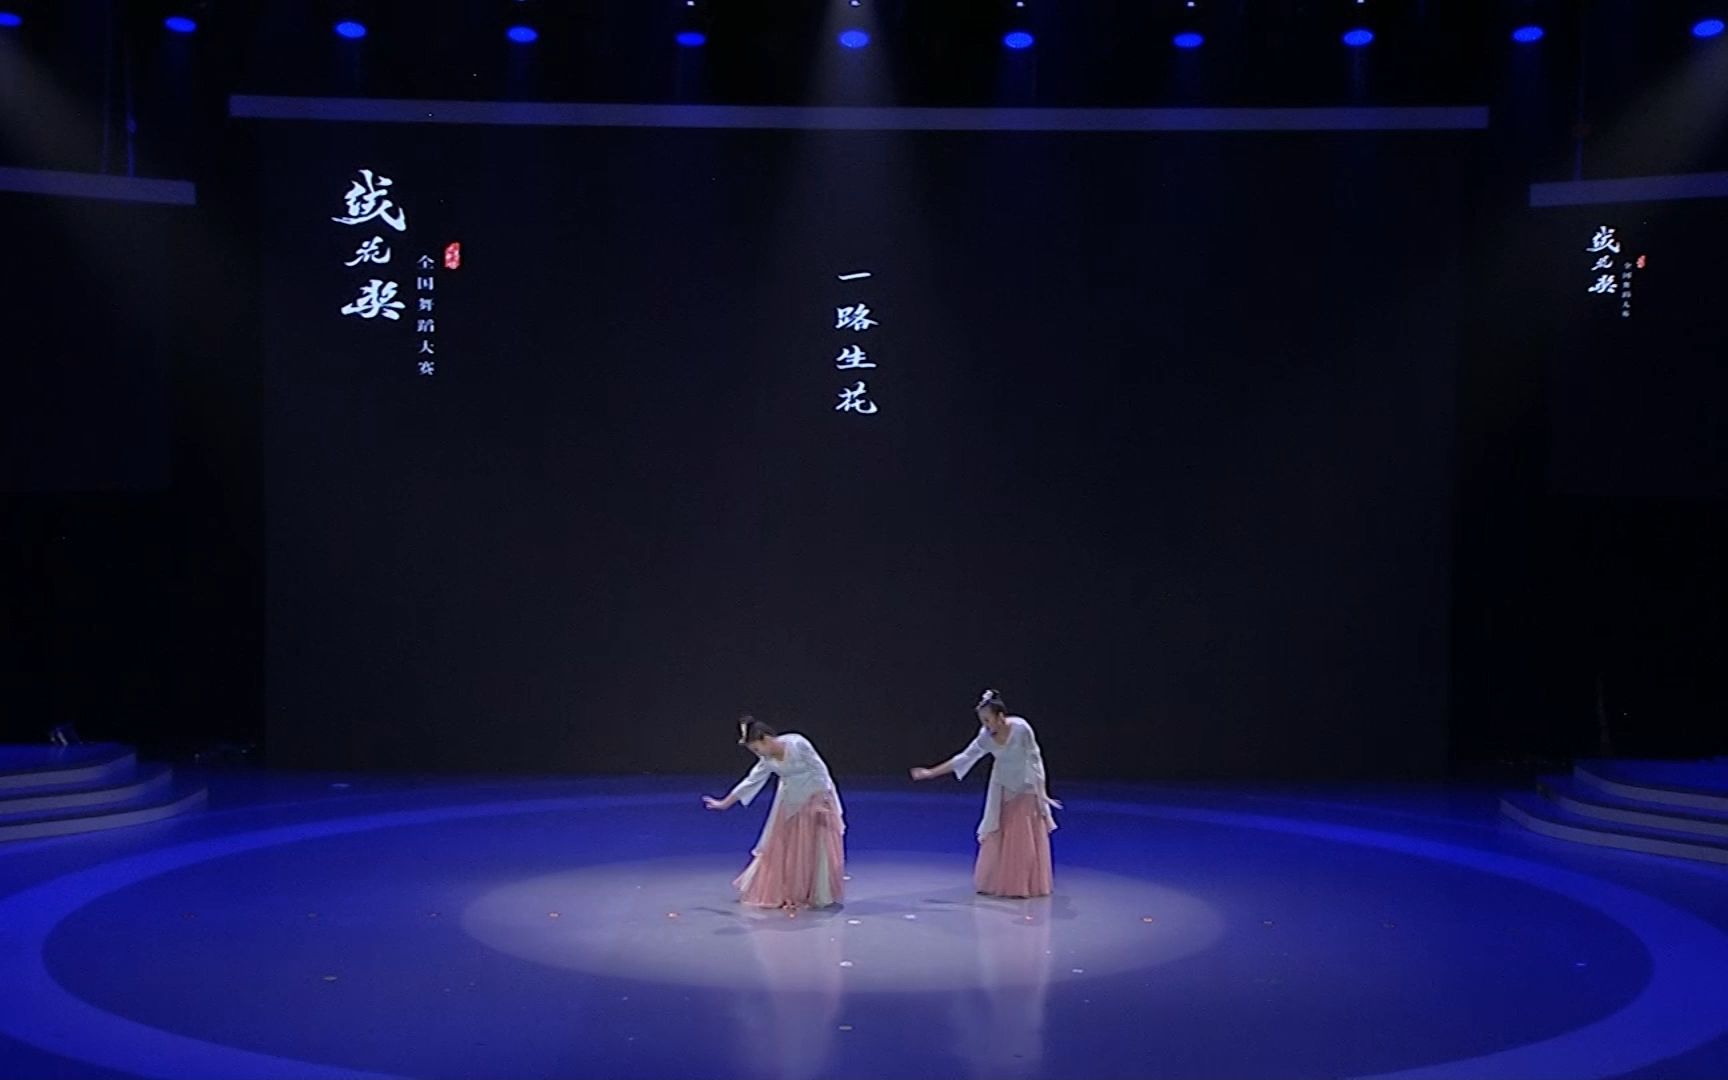 绒花奖全国舞蹈大赛双人舞剧目《一路生花》